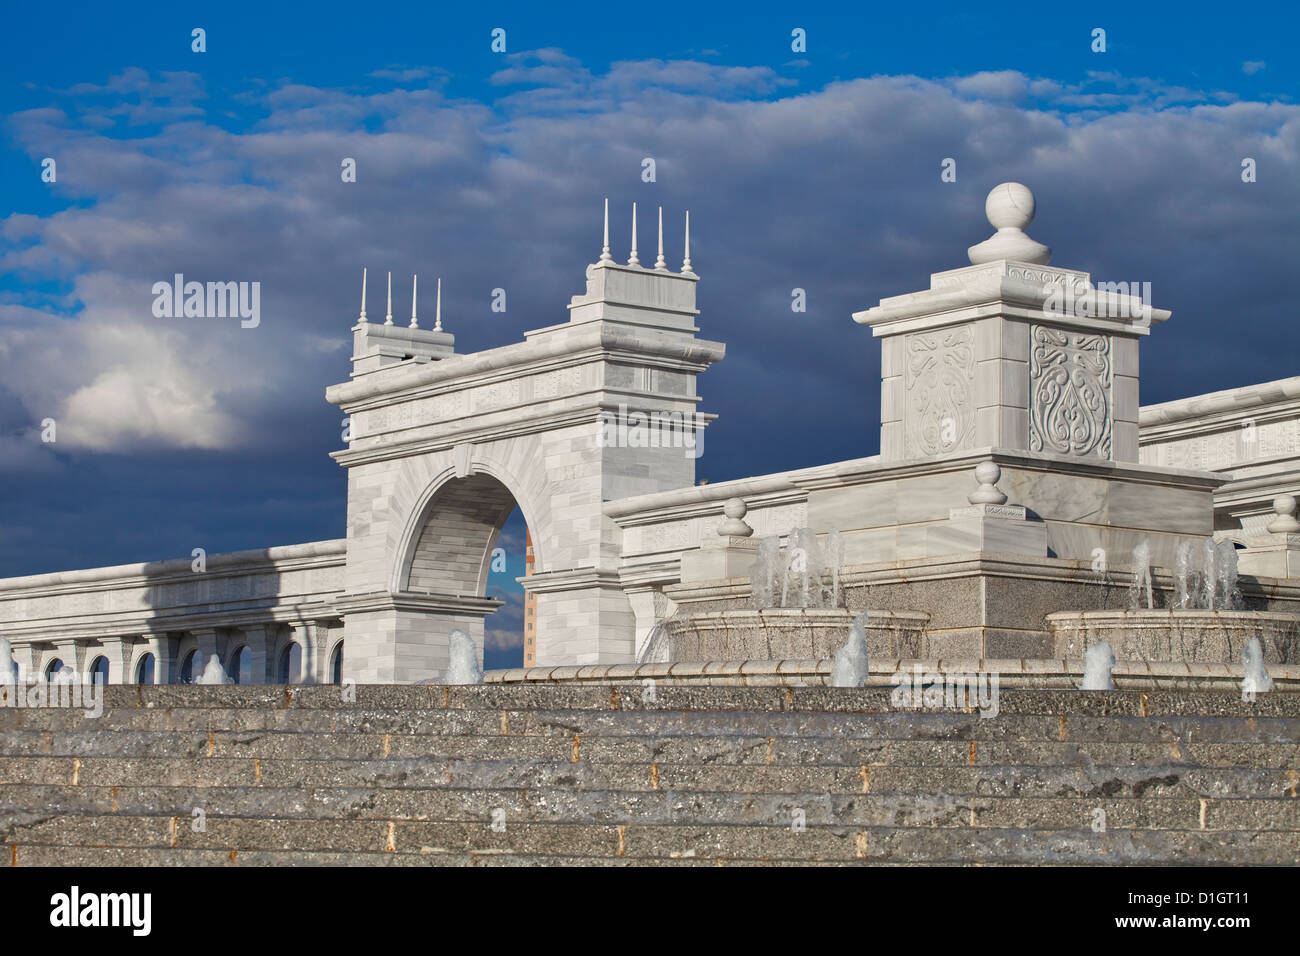 KazakYeli monument (Kazakh Country), and Shabyt Palace of Arts, Astana, Kazakhstan, Central Asia, Asia Stock Photo